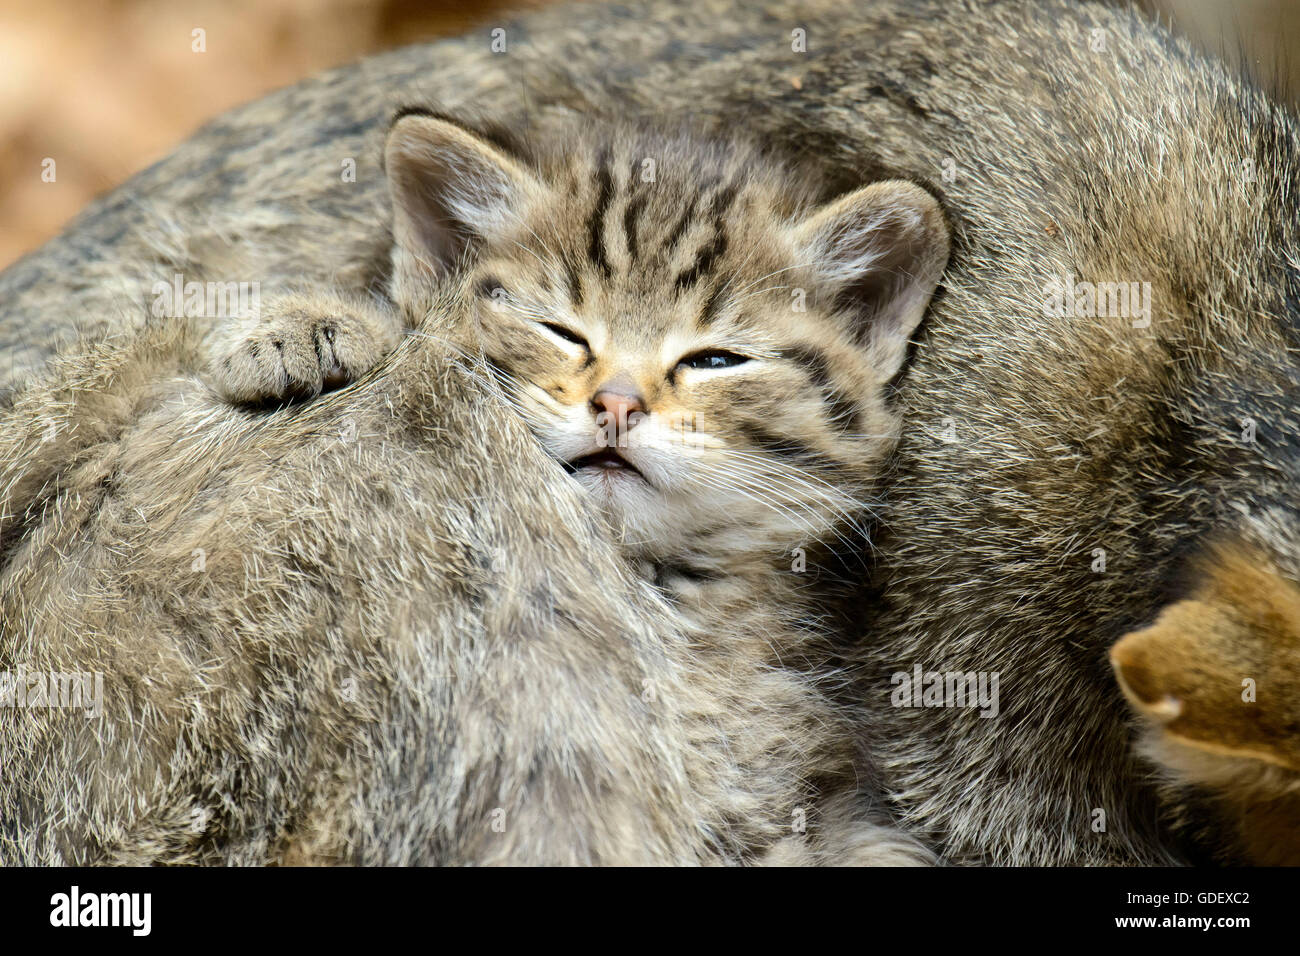 Comune Gatto Selvatico con gattini, Parco Nazionale della Foresta Bavarese, Baviera, Germania, Felis silvestris Foto Stock